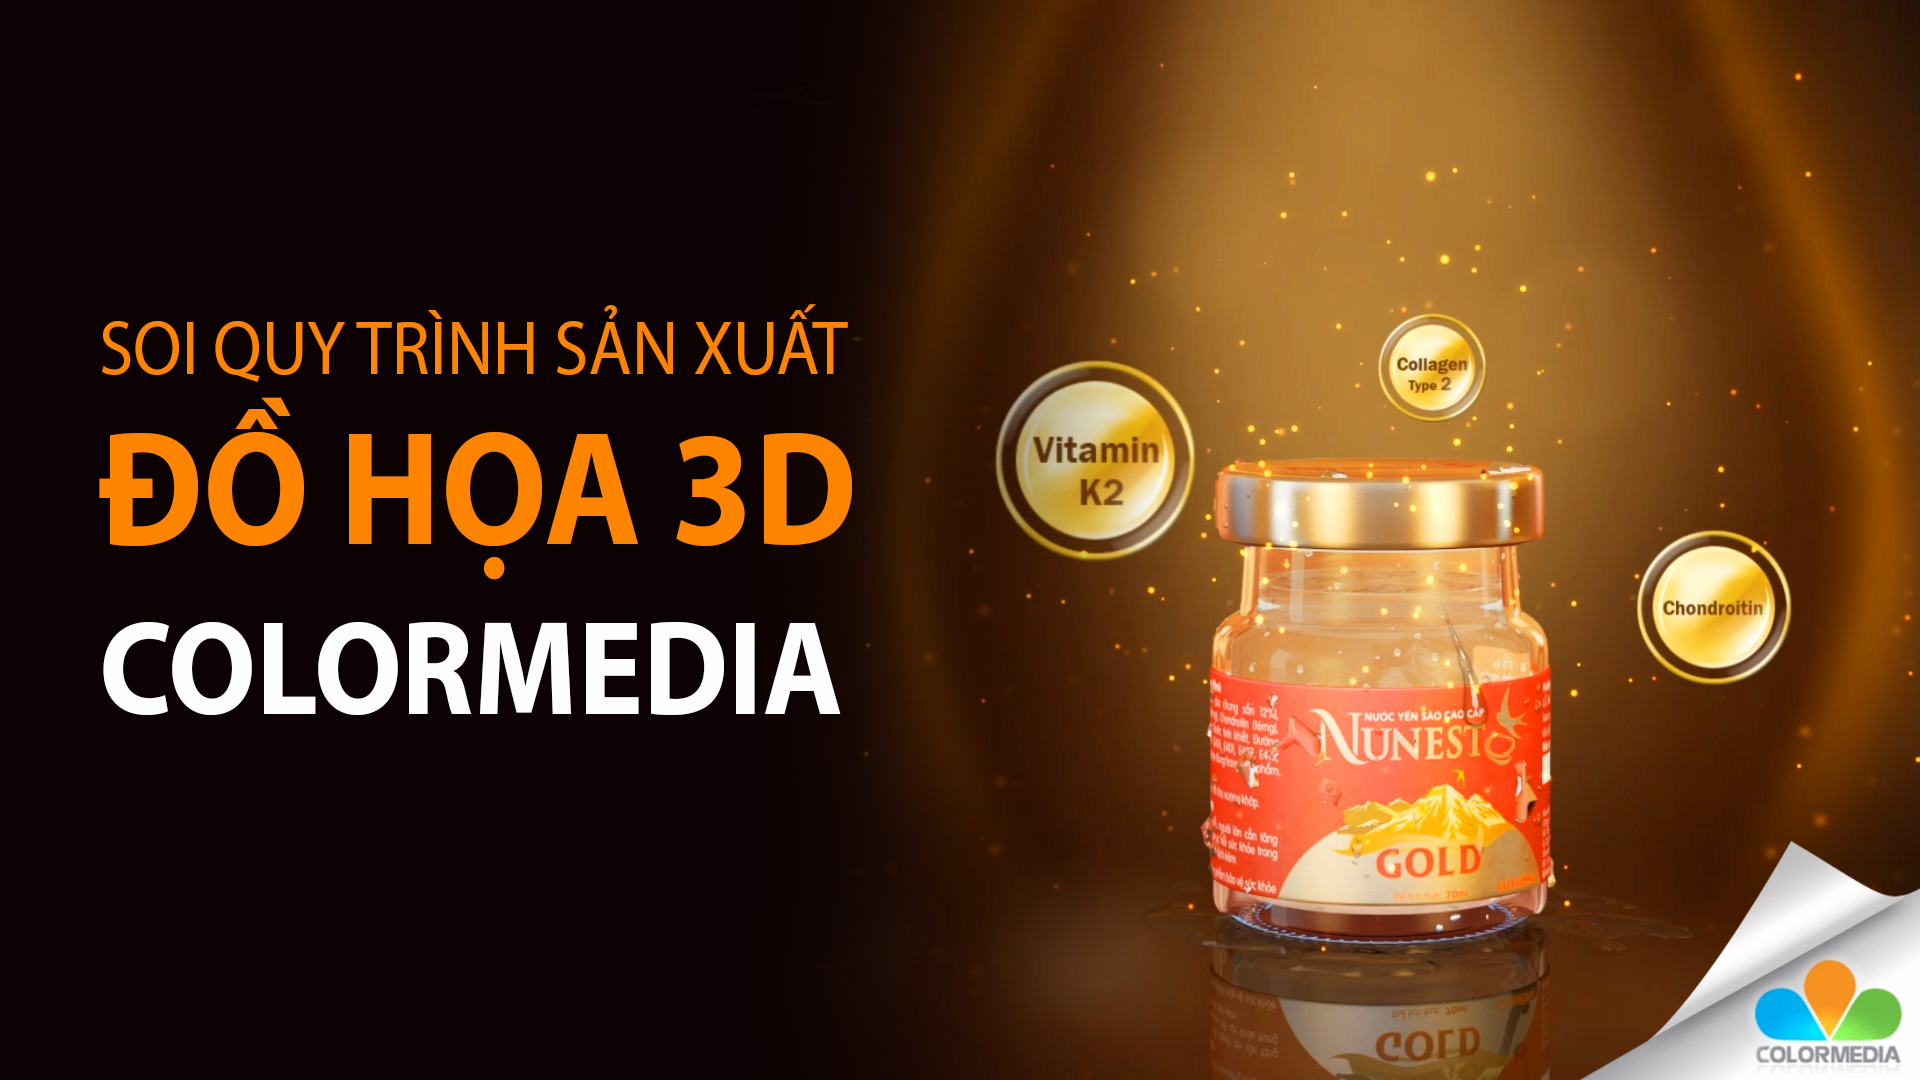 “SOI” quy trình sản xuất đồ họa 3D trong phim doanh nghiệp, TVC quảng cáo của ColorMedia